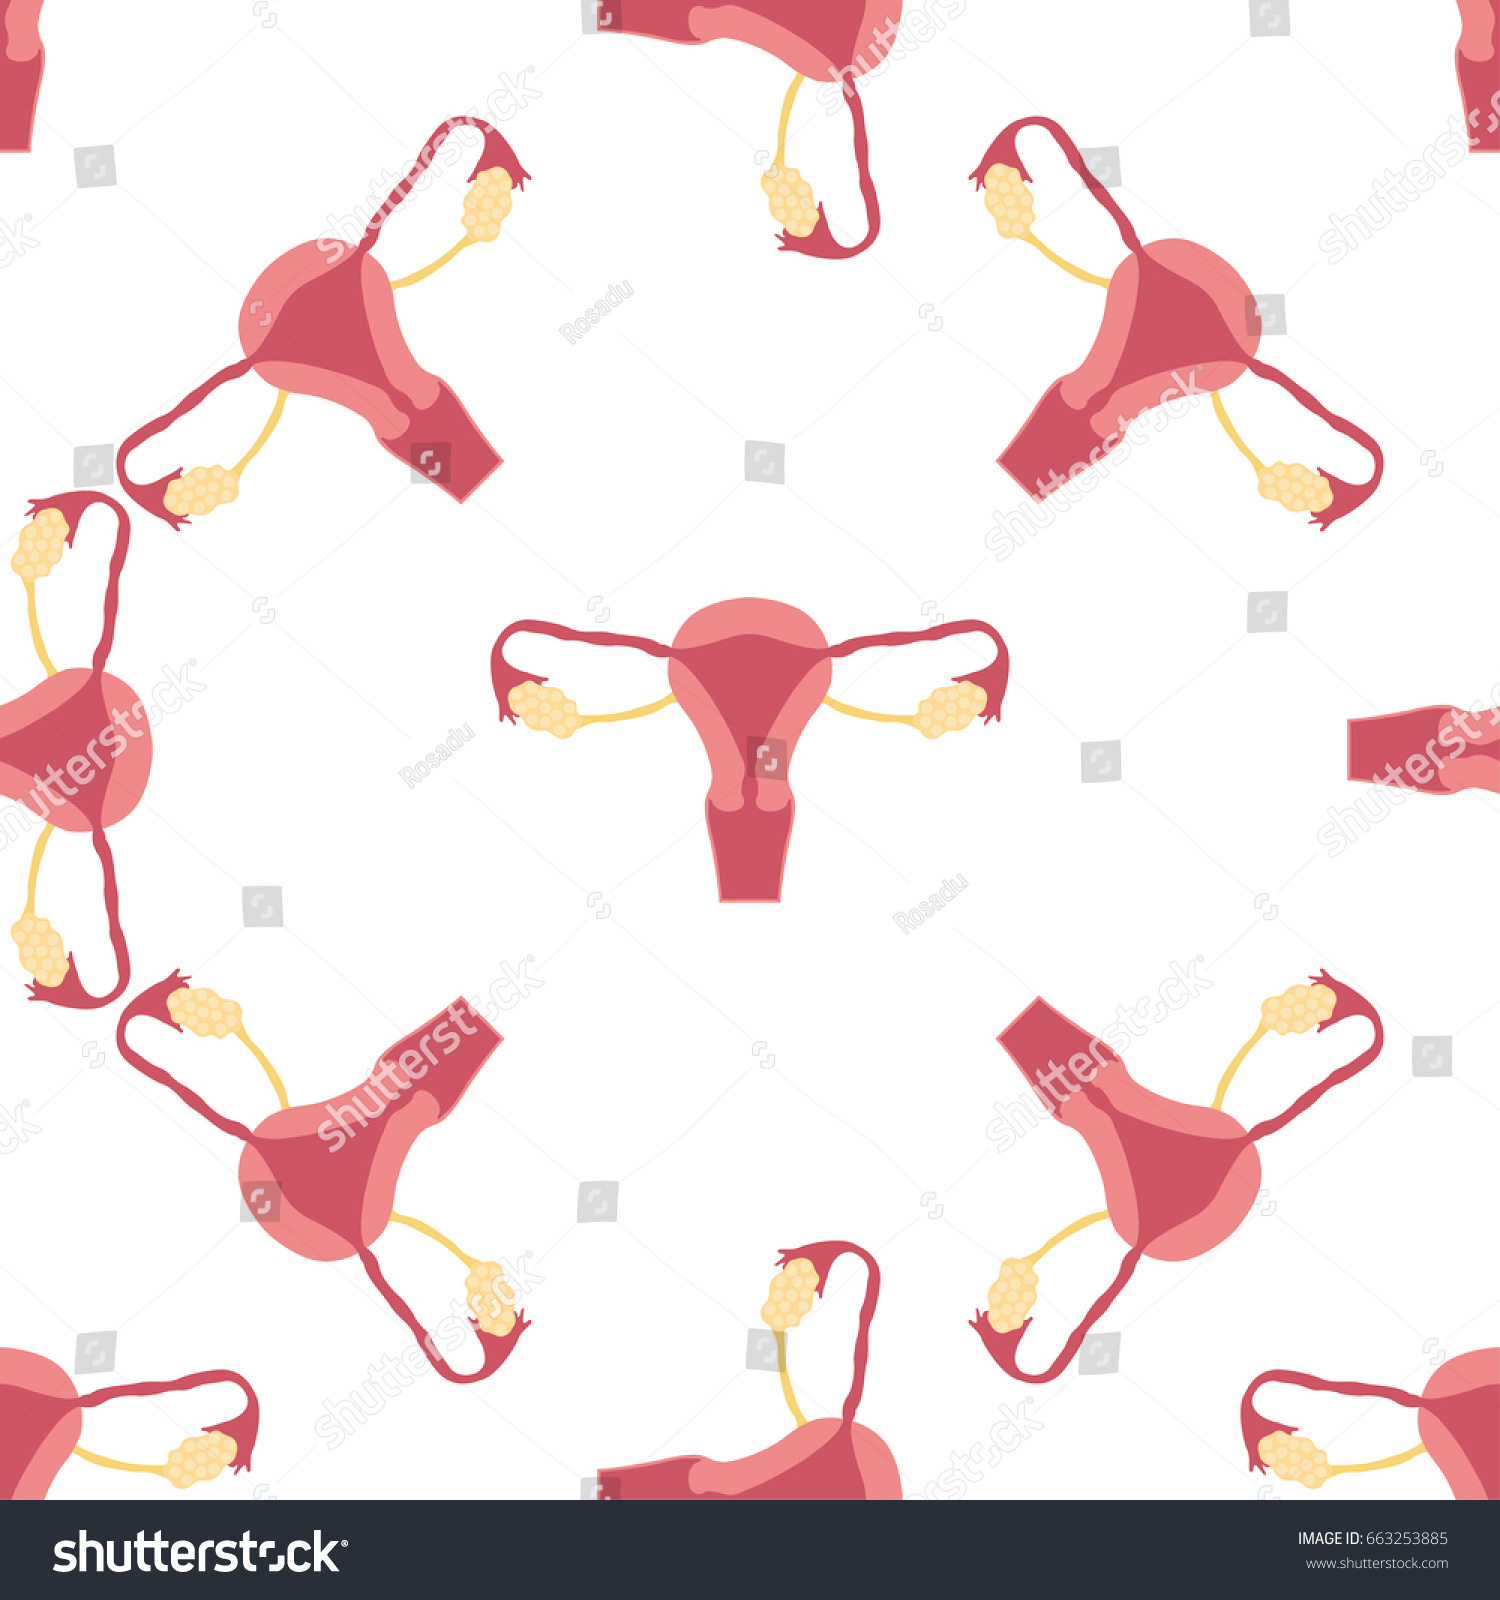 Female Reproductive System Handdrawn Illustration Color Vector De Stock Libre De Regalías 5685